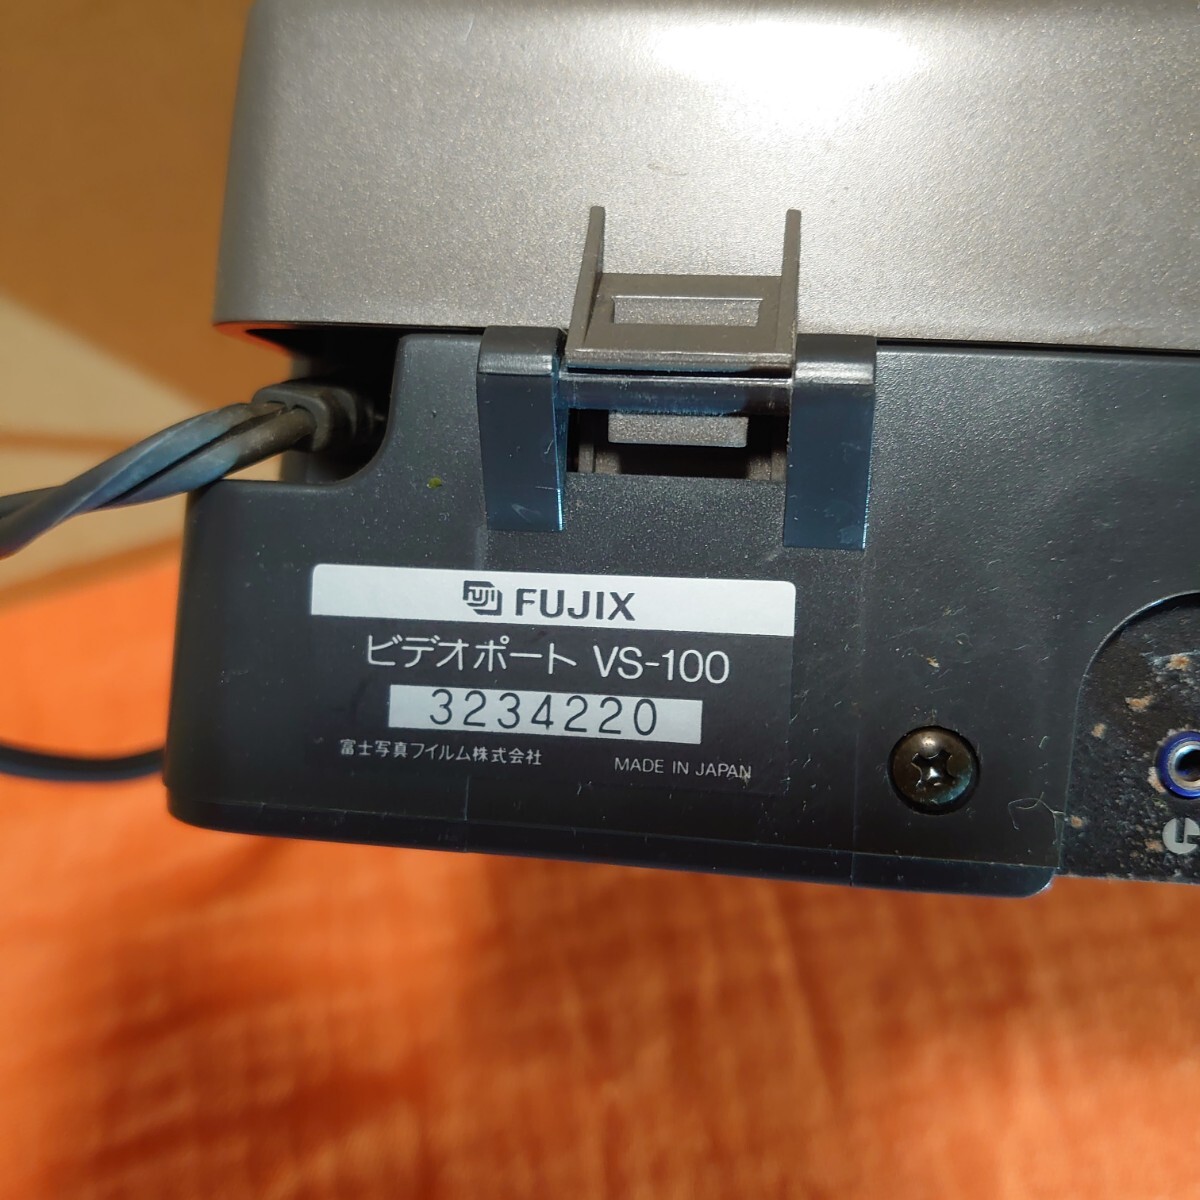 407【通電OK】珍品 FUJIX sinple-Hi8 ビデオポート VS-100/ビデオカメラ FS-1 バッテリー充電器 出力ケーブルセット JUNKの画像9